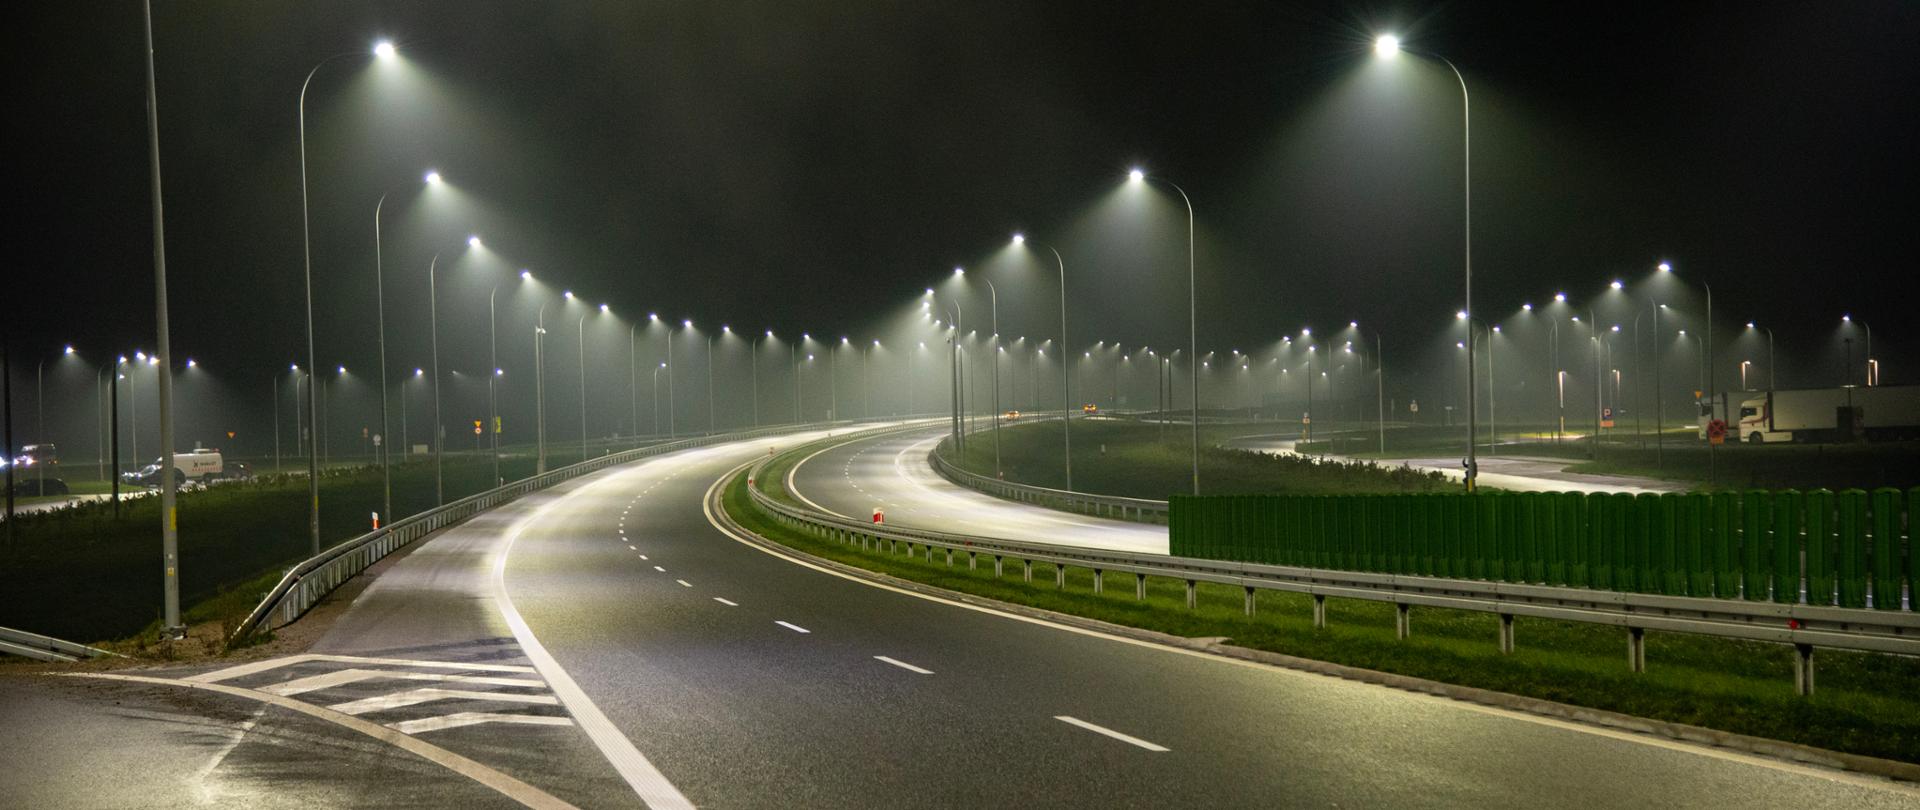 Droga ekspresowa S19 w nocnej scenerii, palą się latarnie, nie widać samochodów